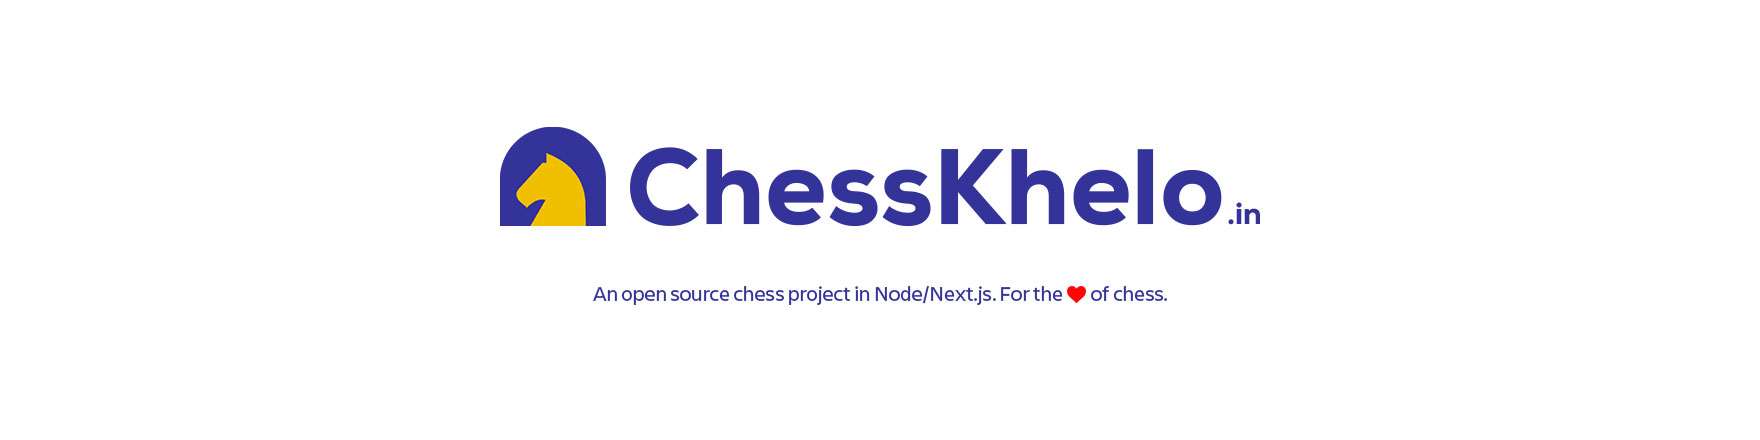 chesskhelo.in banner